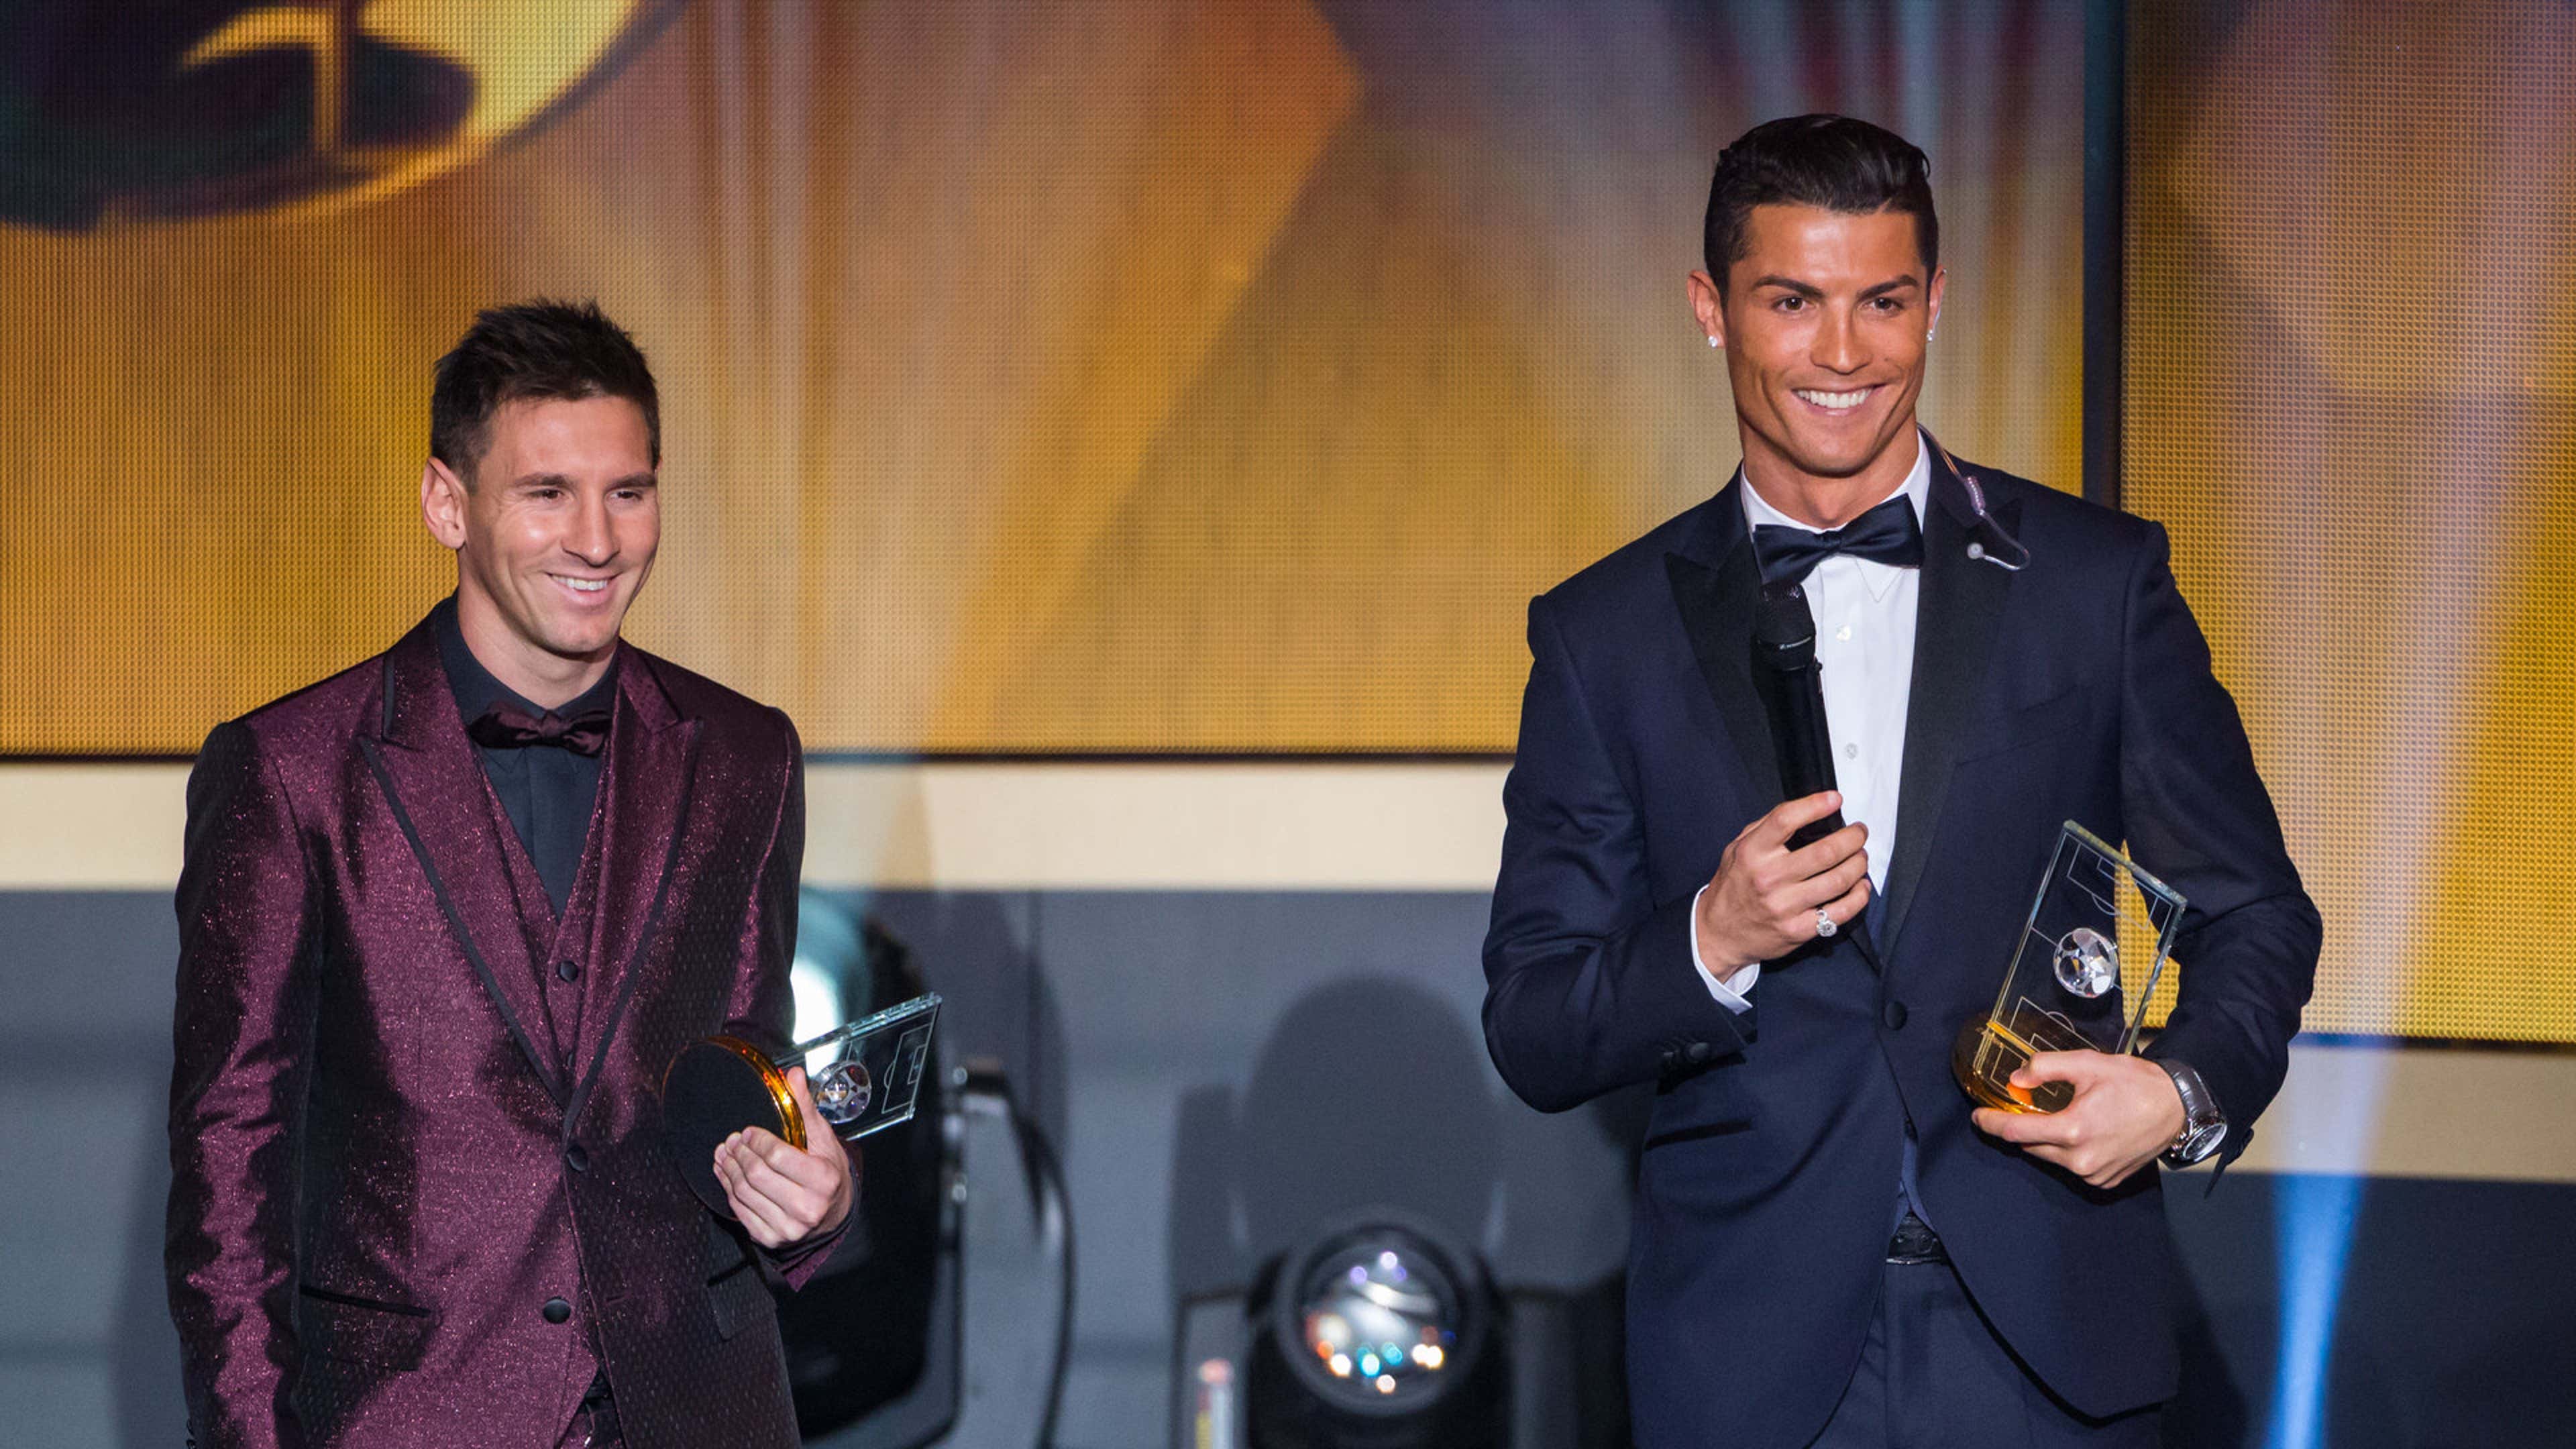 Na grana e nas redes sociais, Ronaldo, Messi e Neymar formam eterno top 3;  na bola, nenhum merece estar hoje entre os 3 melhores do mundo